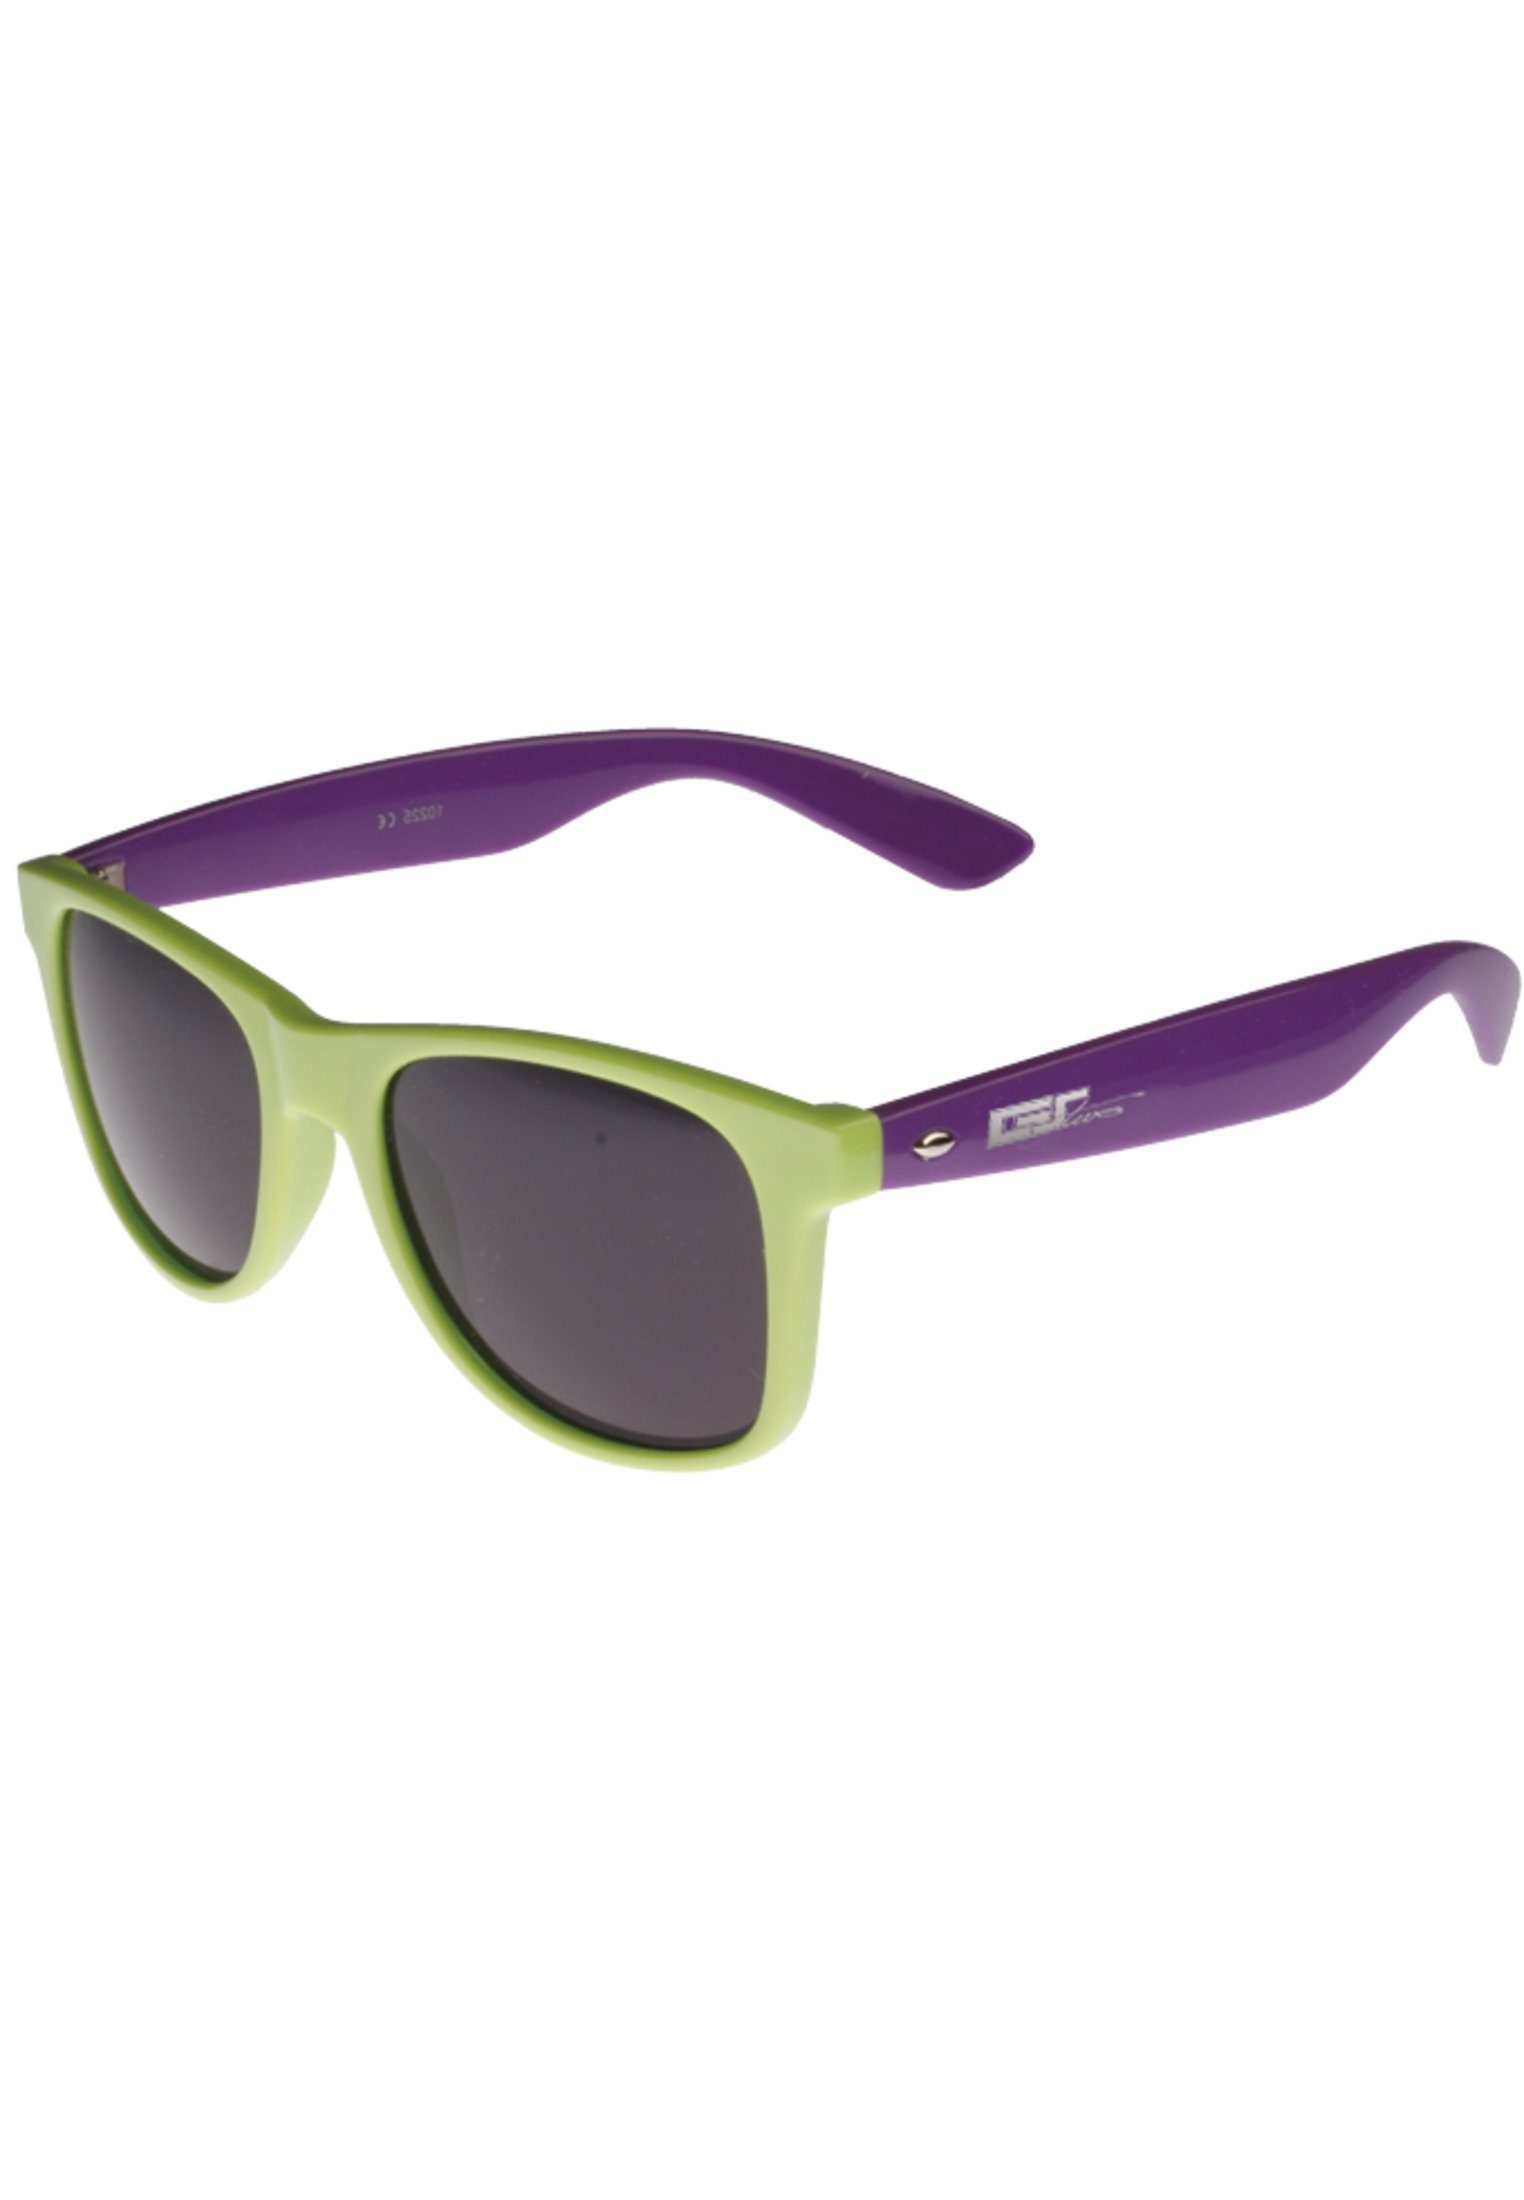 Online-Shopping zu Schnäppchenpreisen MSTRDS Sonnenbrille GStwo limegreen/purple Shades Accessoires Groove